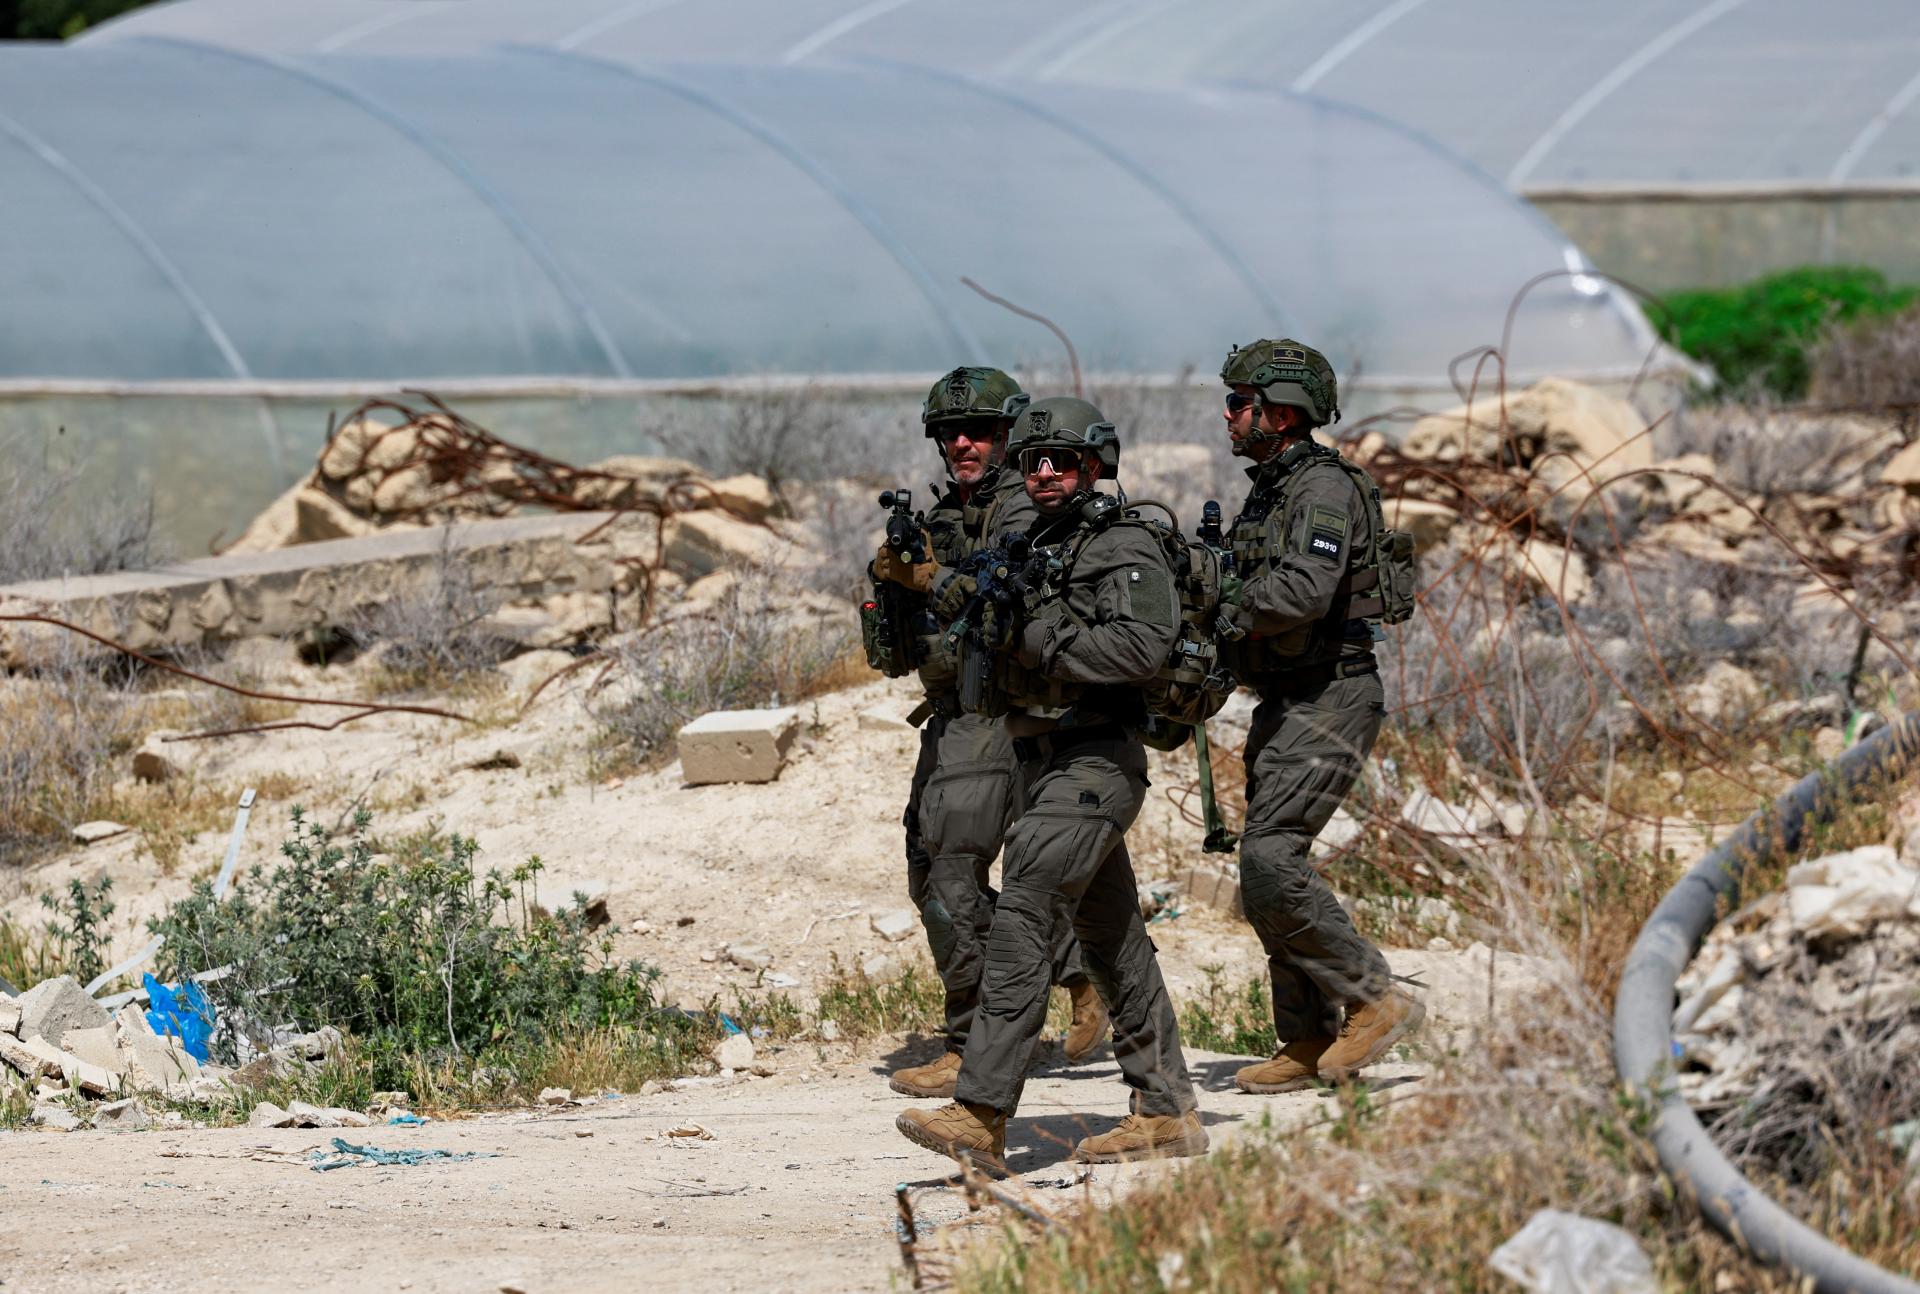 Izrael odpovie Iránu činmi, nie slovami, tvrdí armáda. Svet vyzýva na zdržanlivosť